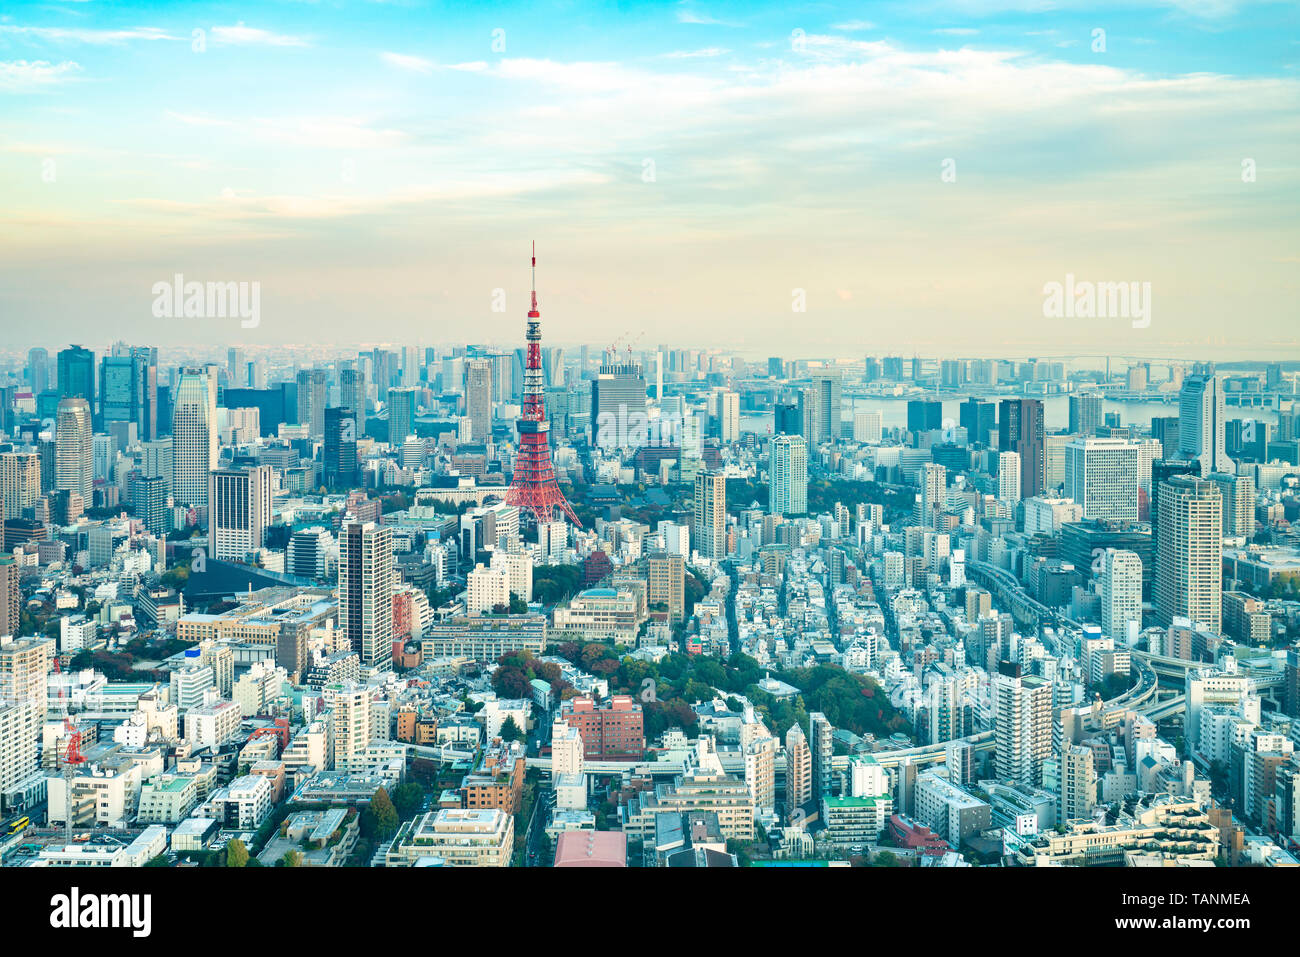 La Tour de Tokyo, Japon - communication et tour d'observation. C'était la plus haute structure artificielle au Japon jusqu'en 2010 lorsque le nouveau Tokyo Skytree becam Banque D'Images